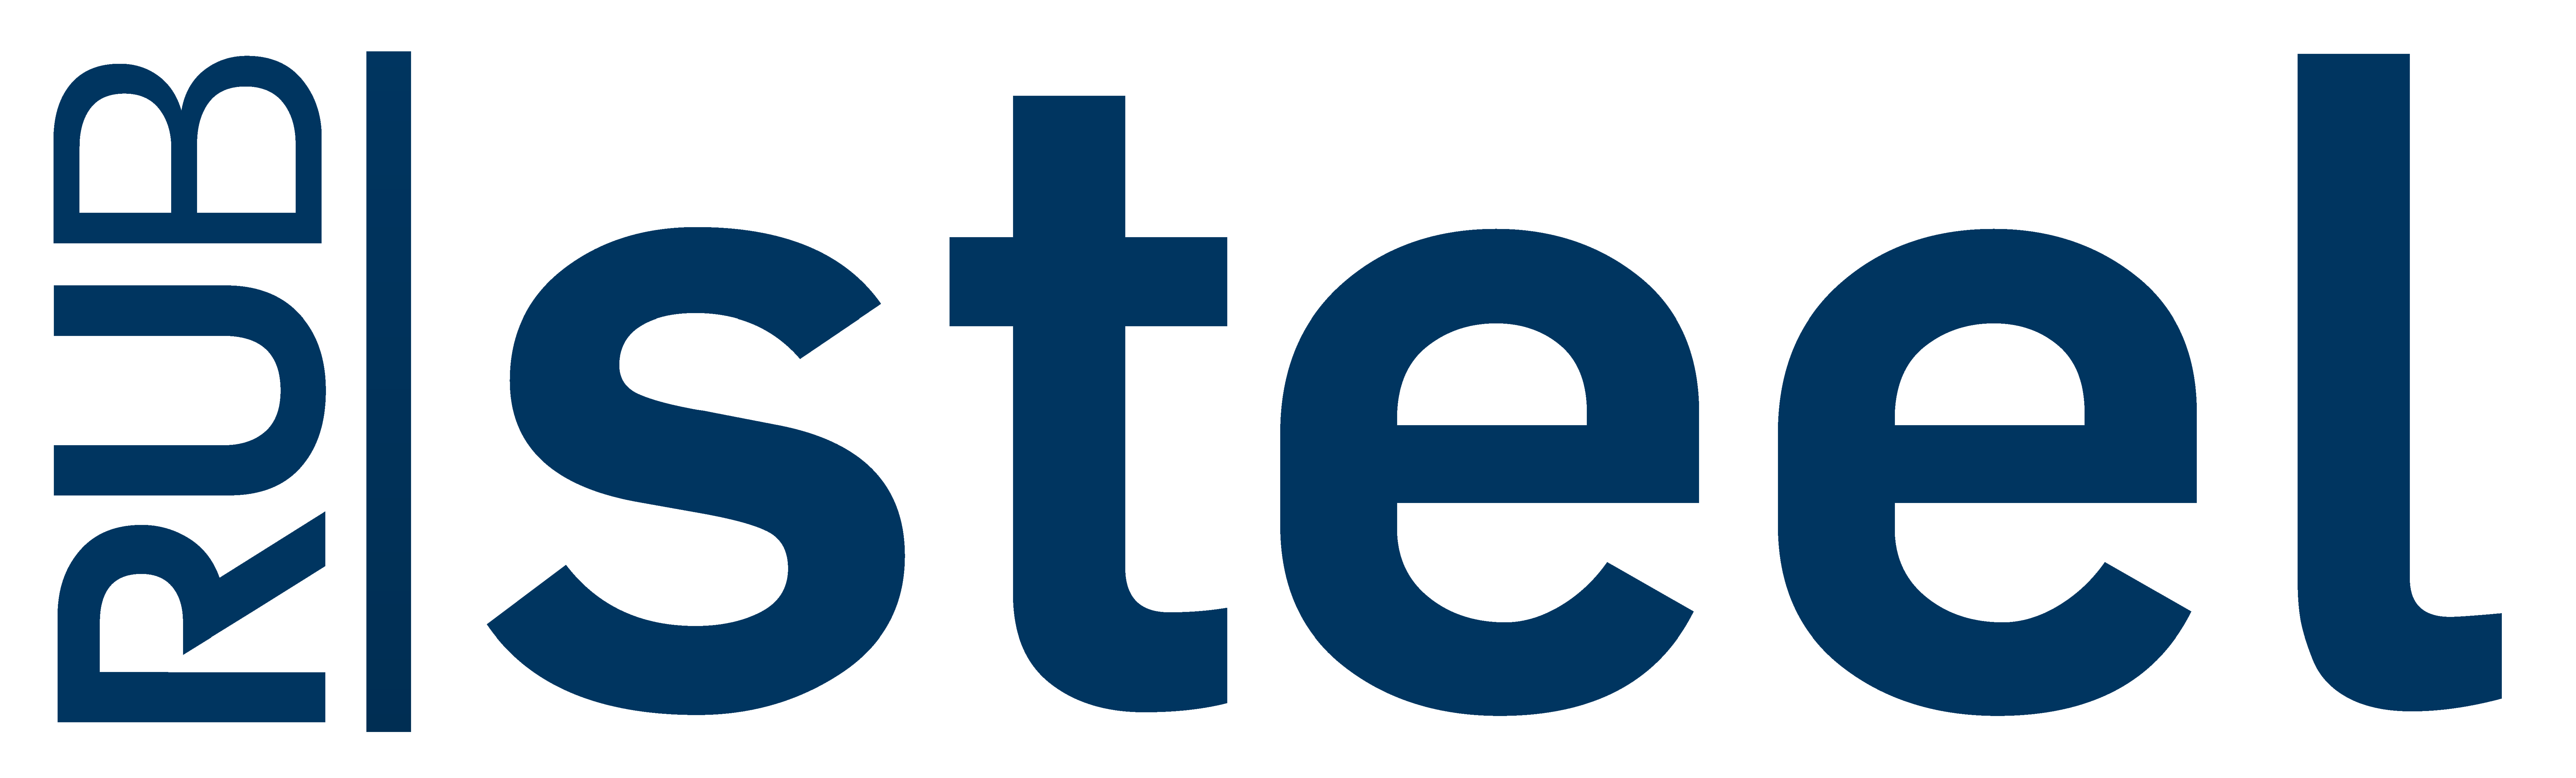 Fakultäts-Logo